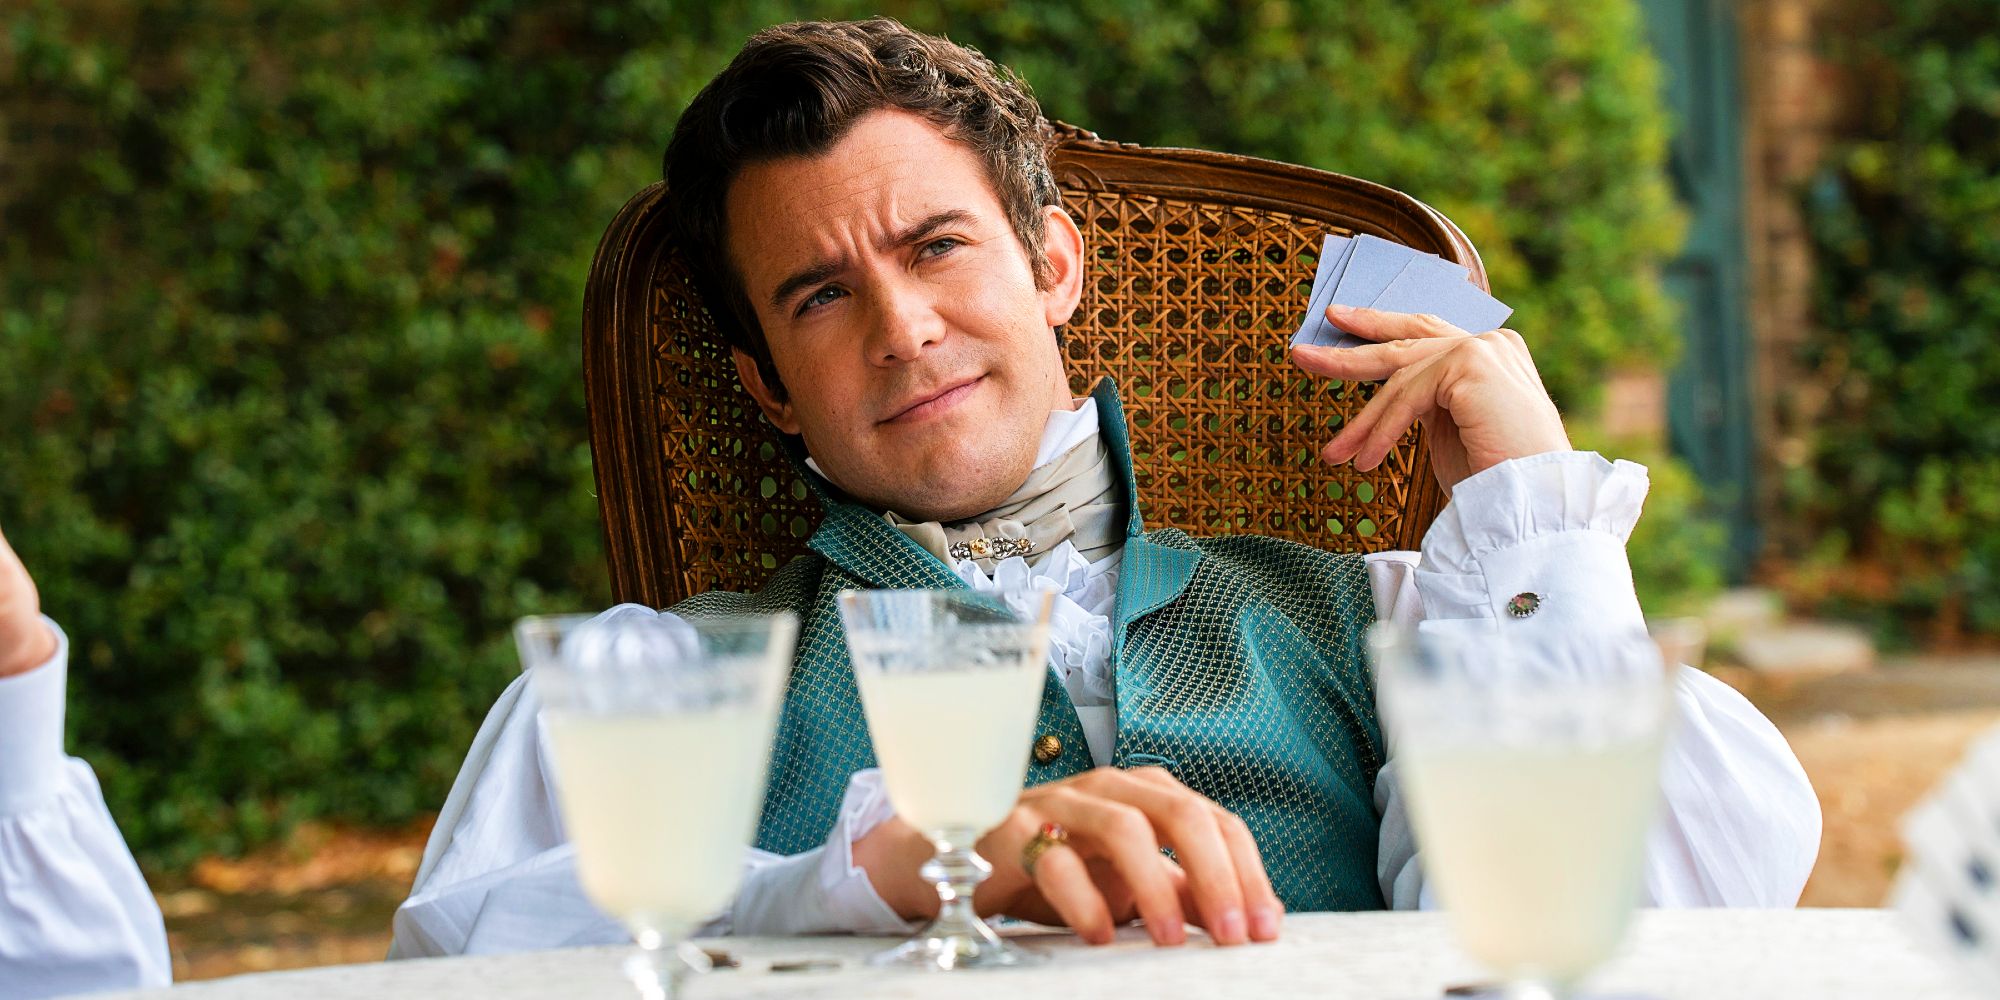 Luke Thompson as Benedict Bridgerton playing cards with drinks in front of him in Bridgerton season 3 episode 2